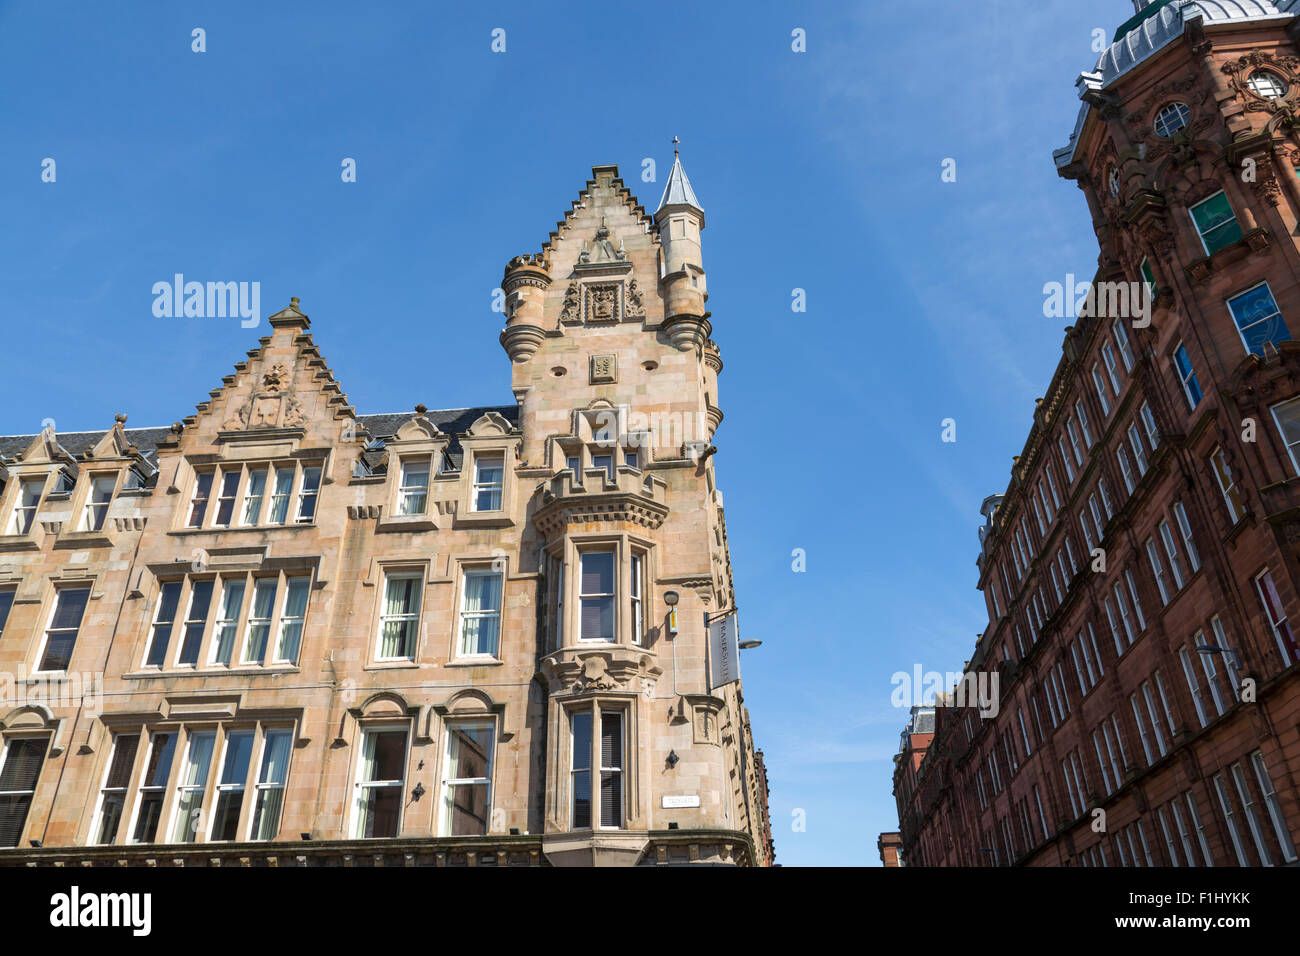 Merchant City Glasgow. Détail du bâtiment de la City Bank construit dans les années 1850, abrite maintenant Fraser Suites Serviced Apartments / Hôtel, Trongate, Écosse, Royaume-Uni Banque D'Images